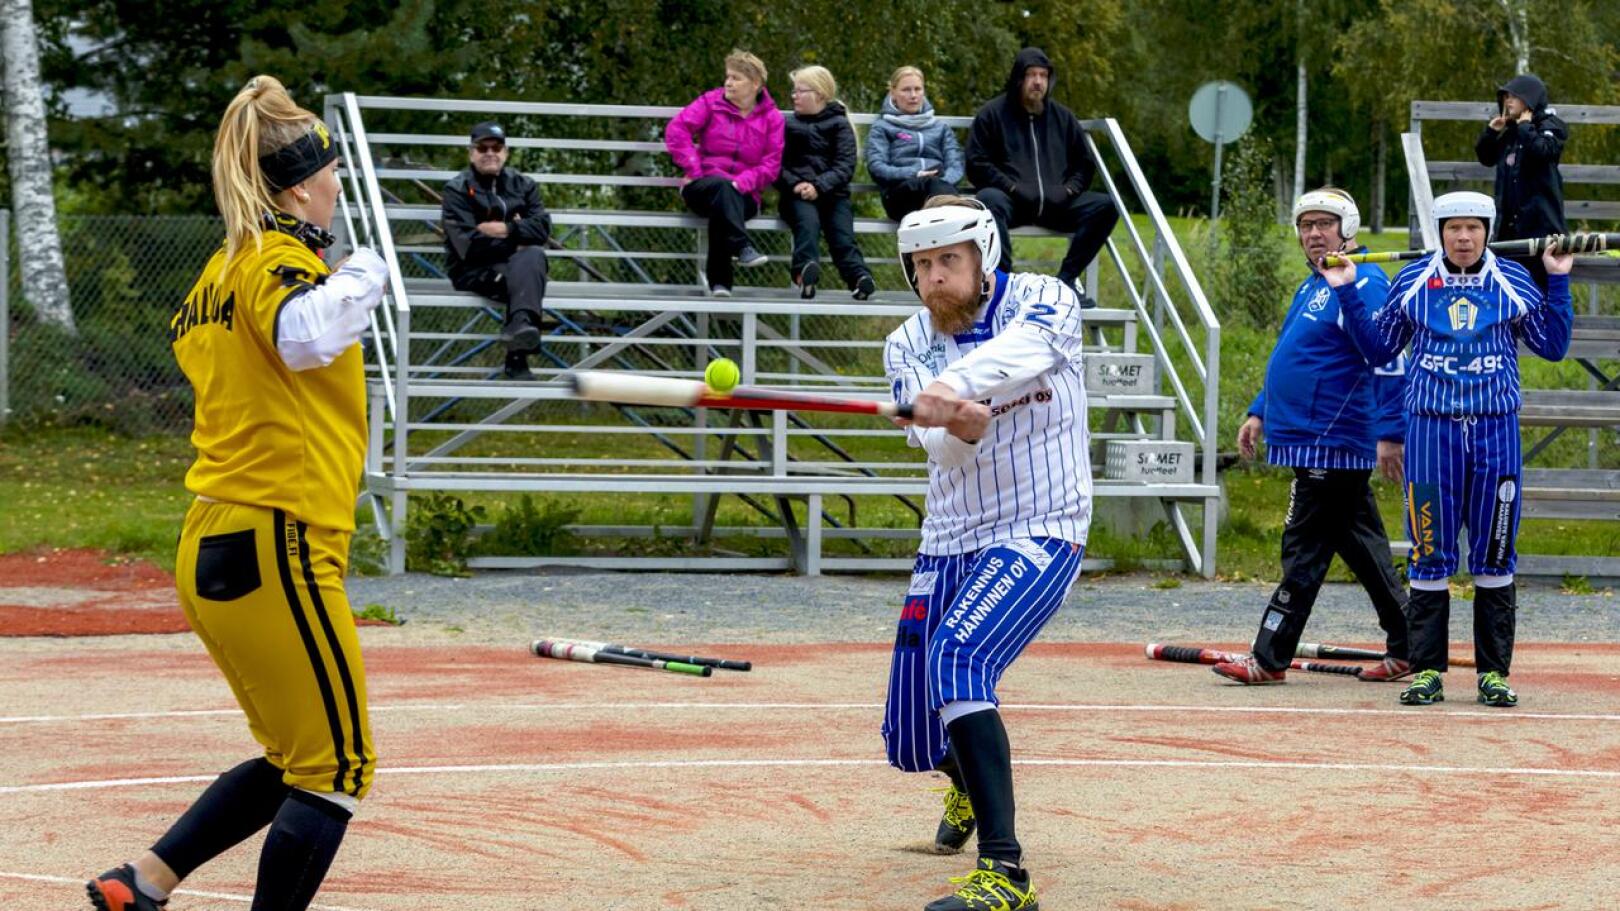 Juha-Matti Kahelin pelasi niin sisällä kuin ulkonakin tasaisen pelin.